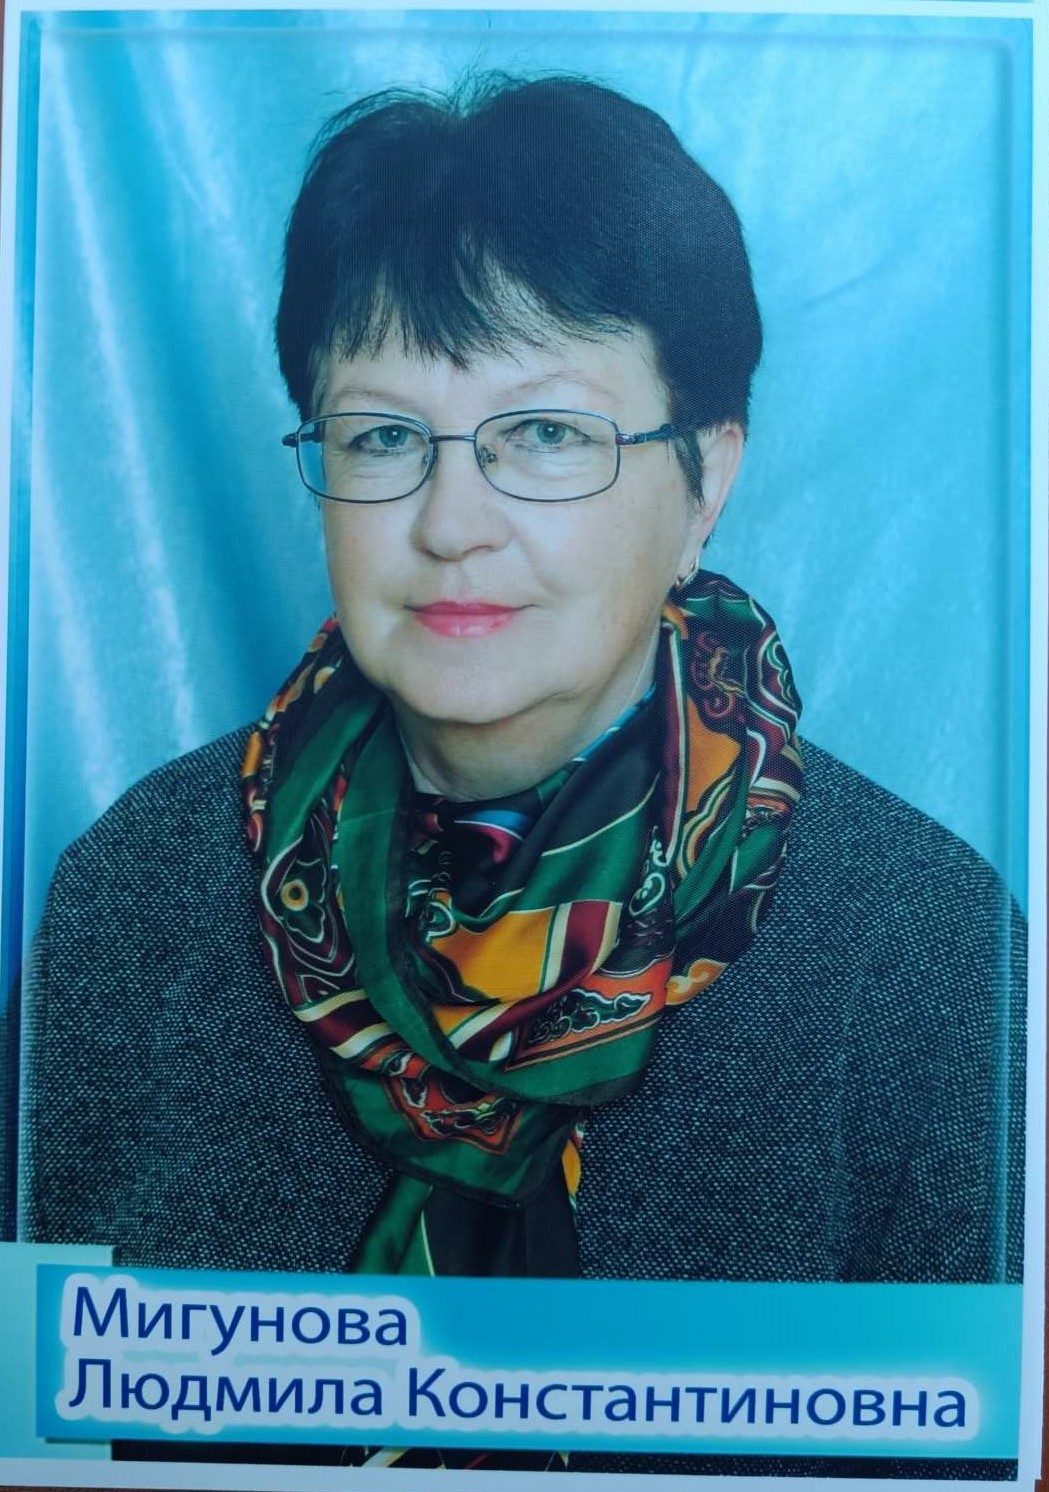 Мигунова Людмила Константиновна.